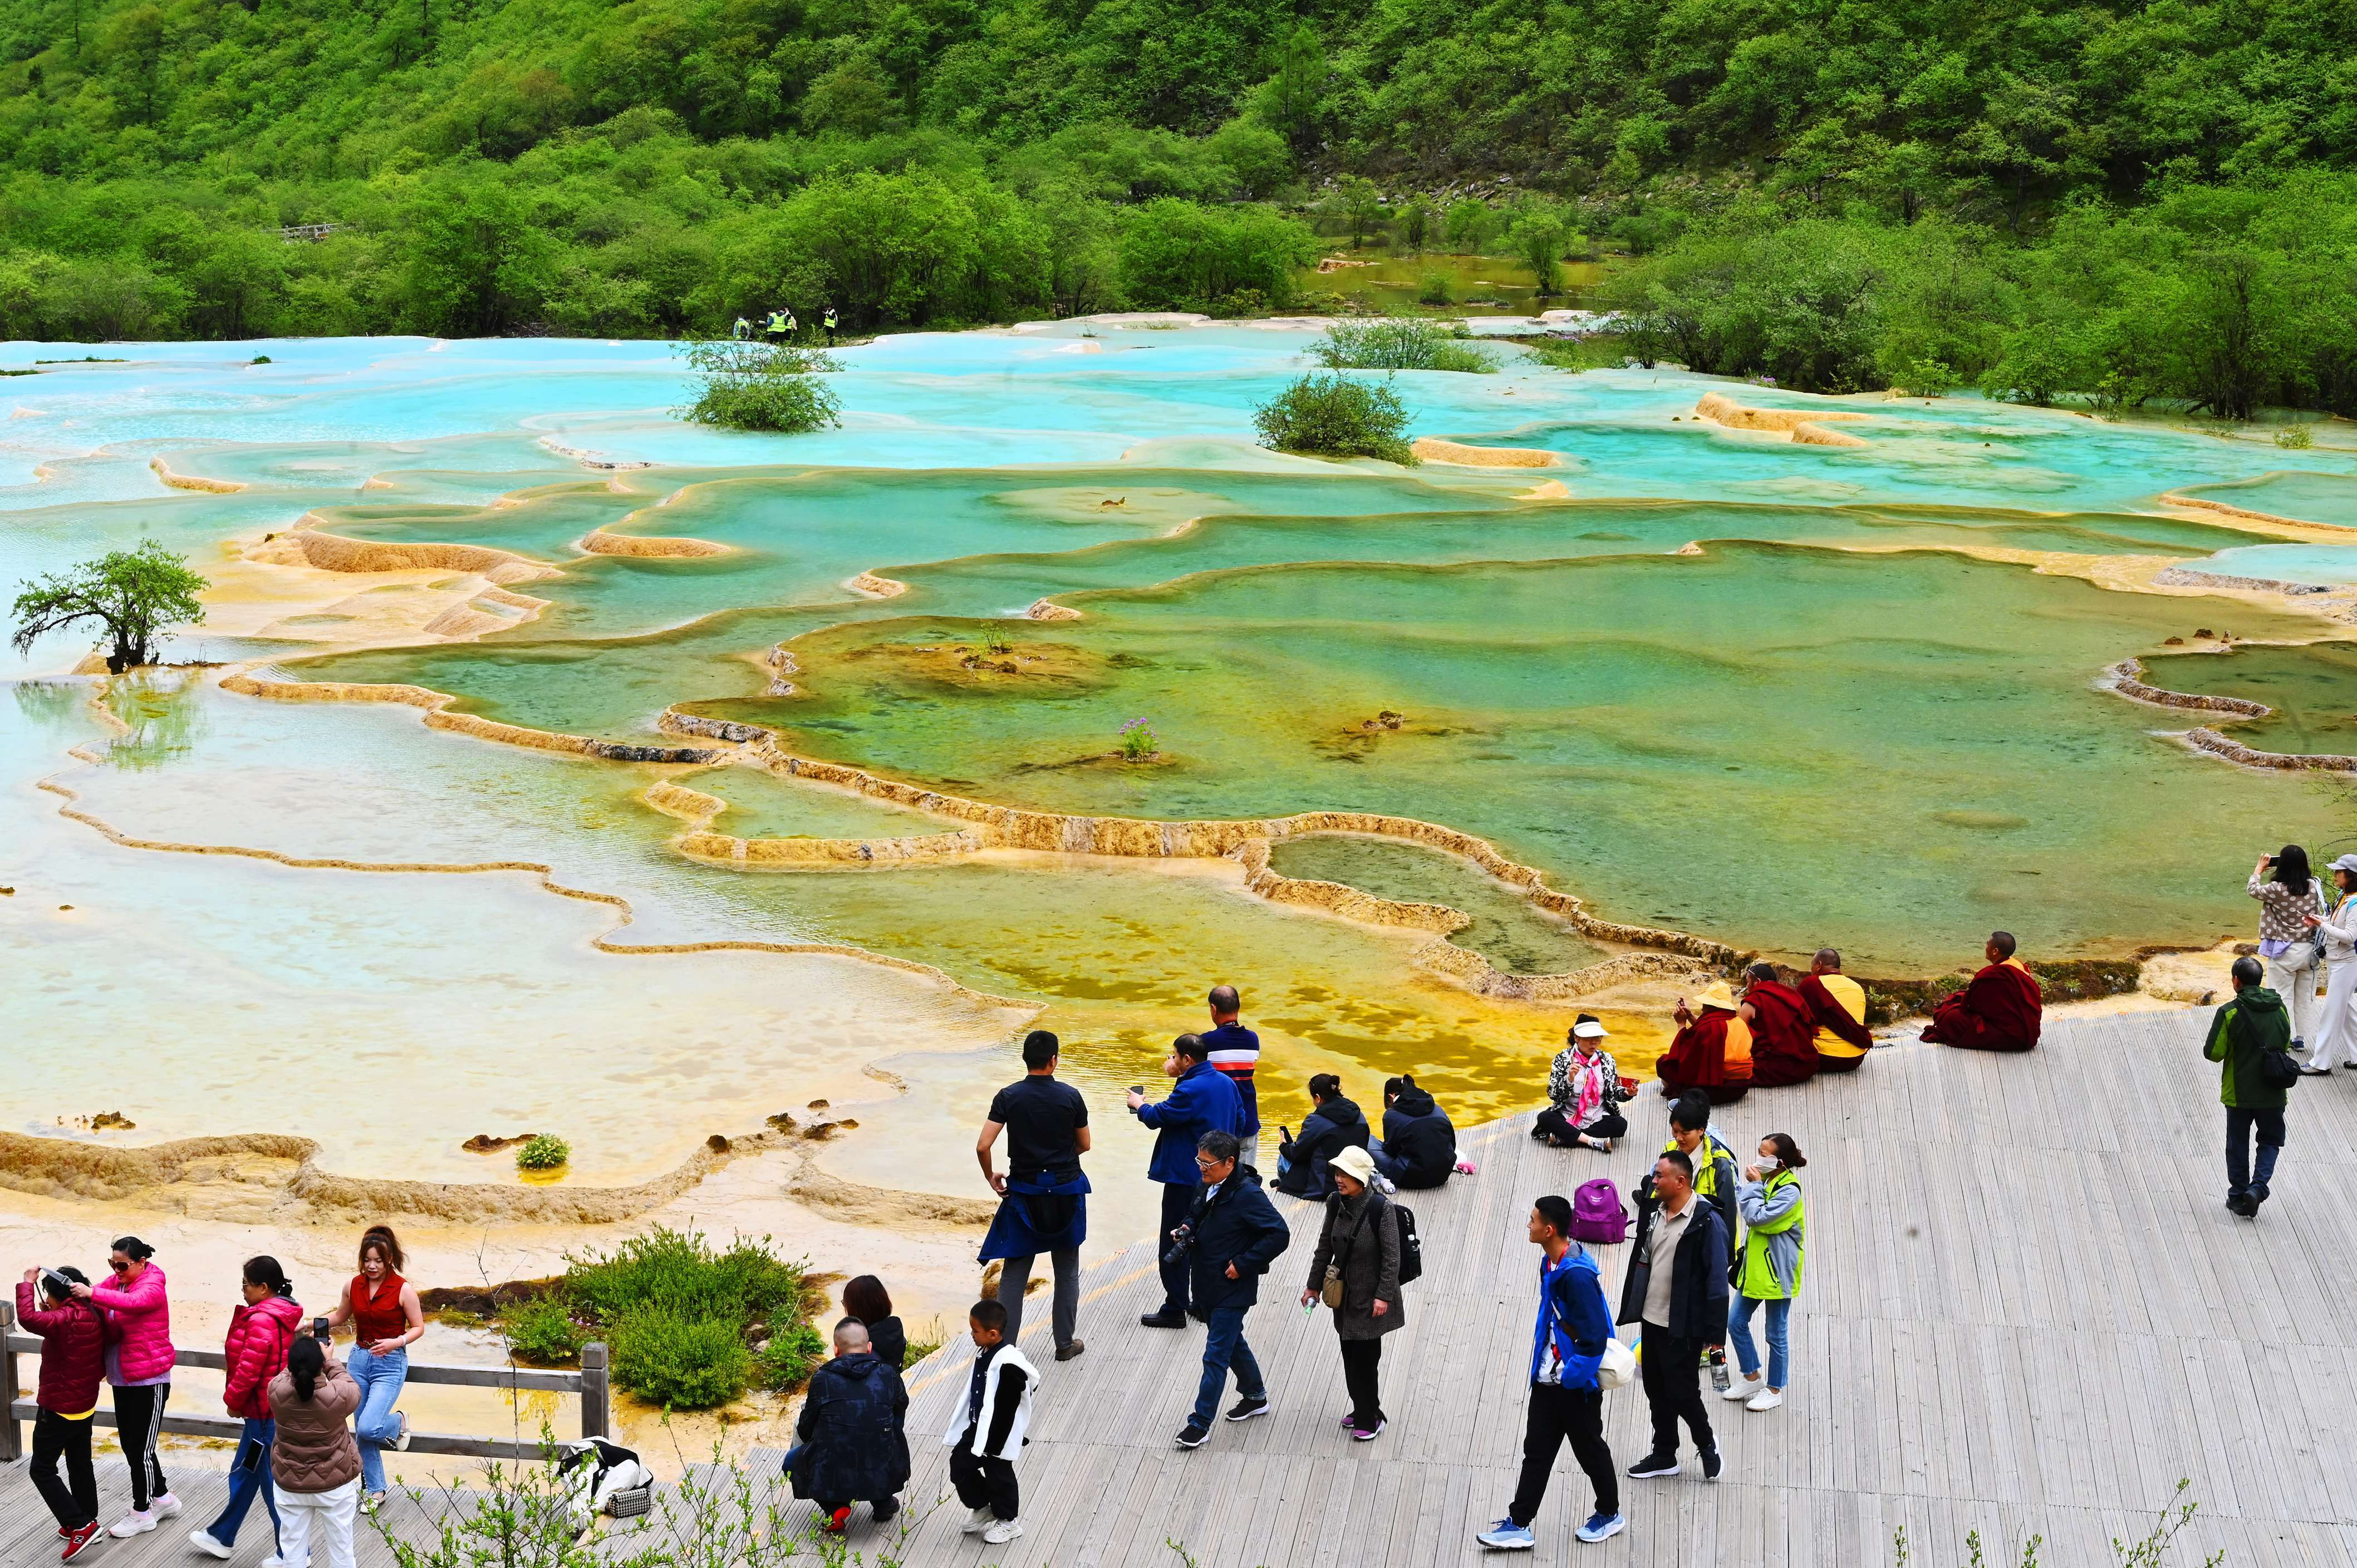 6月19日,初夏时节,世界自然遗产黄龙风景名胜区风景如画,吸引众多游客